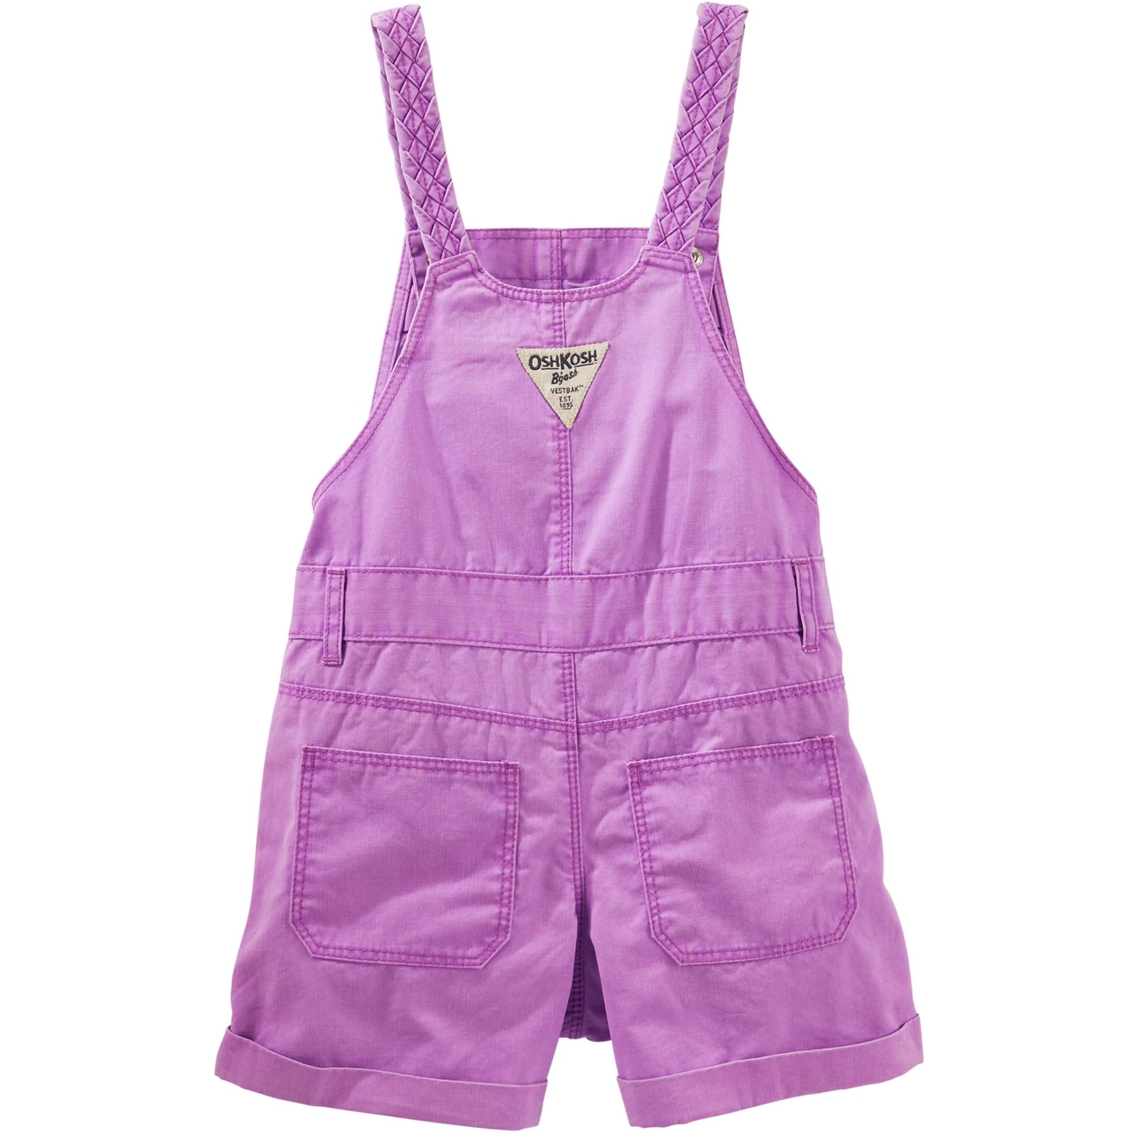 OshKosh B'Gosh Infant Girls Braided Strap Shortalls, Go Lightly Lilac Neon - Image 2 of 2